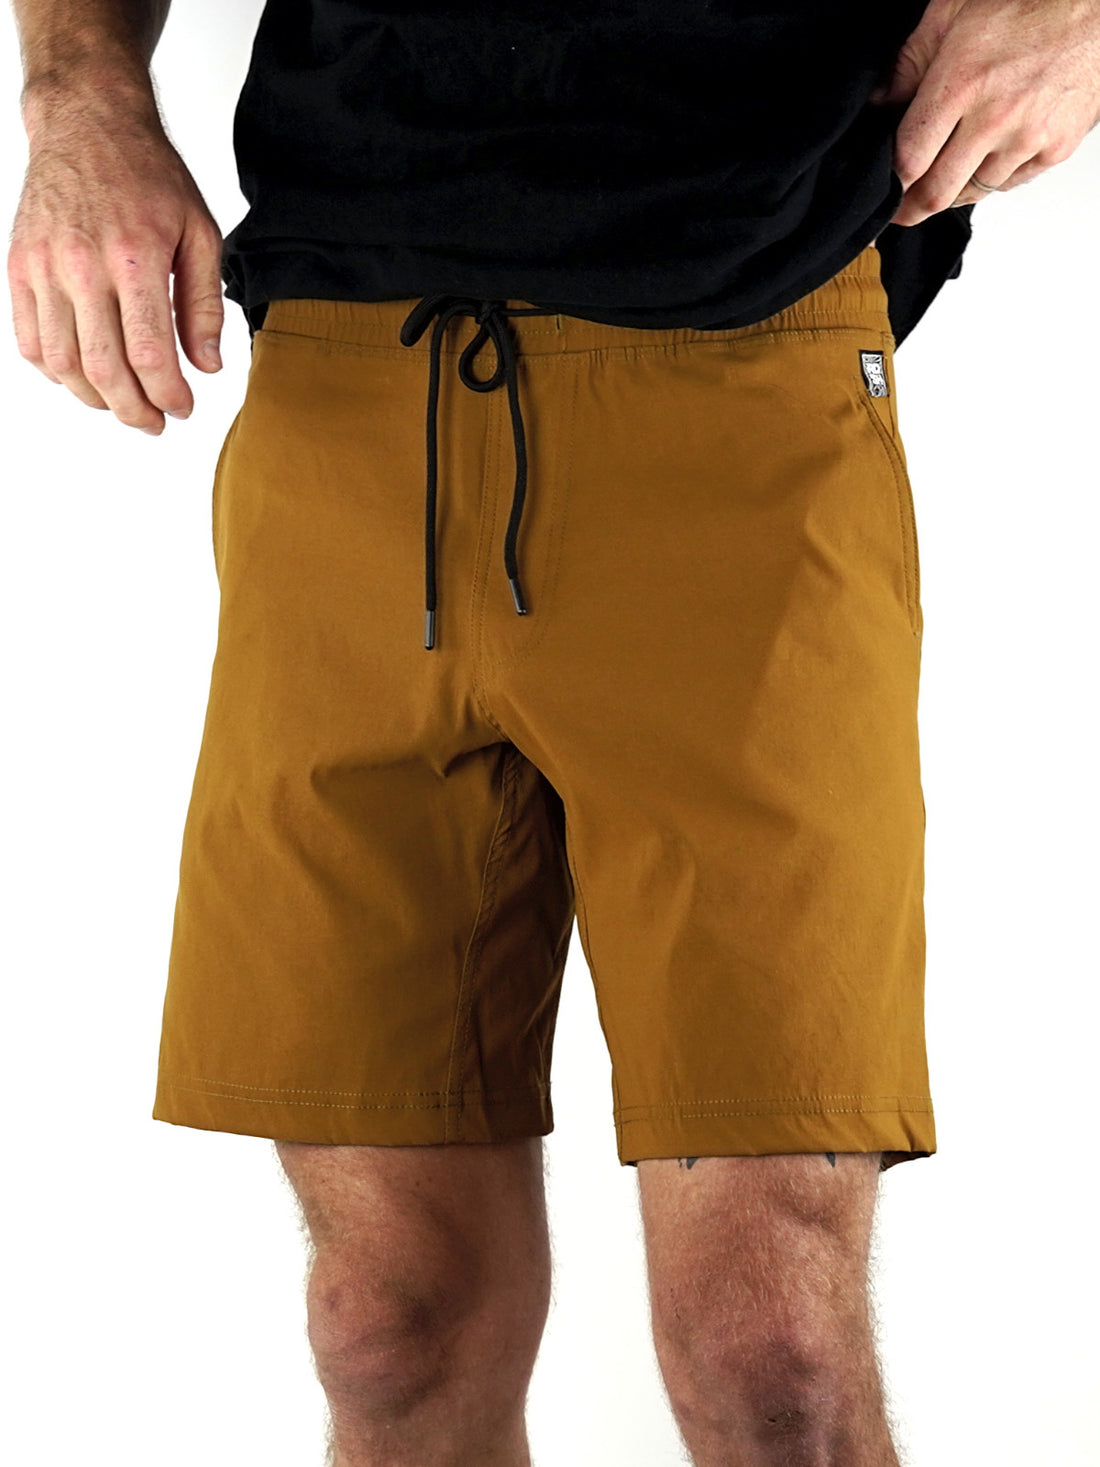 Lontra Shorts: Desert Sand